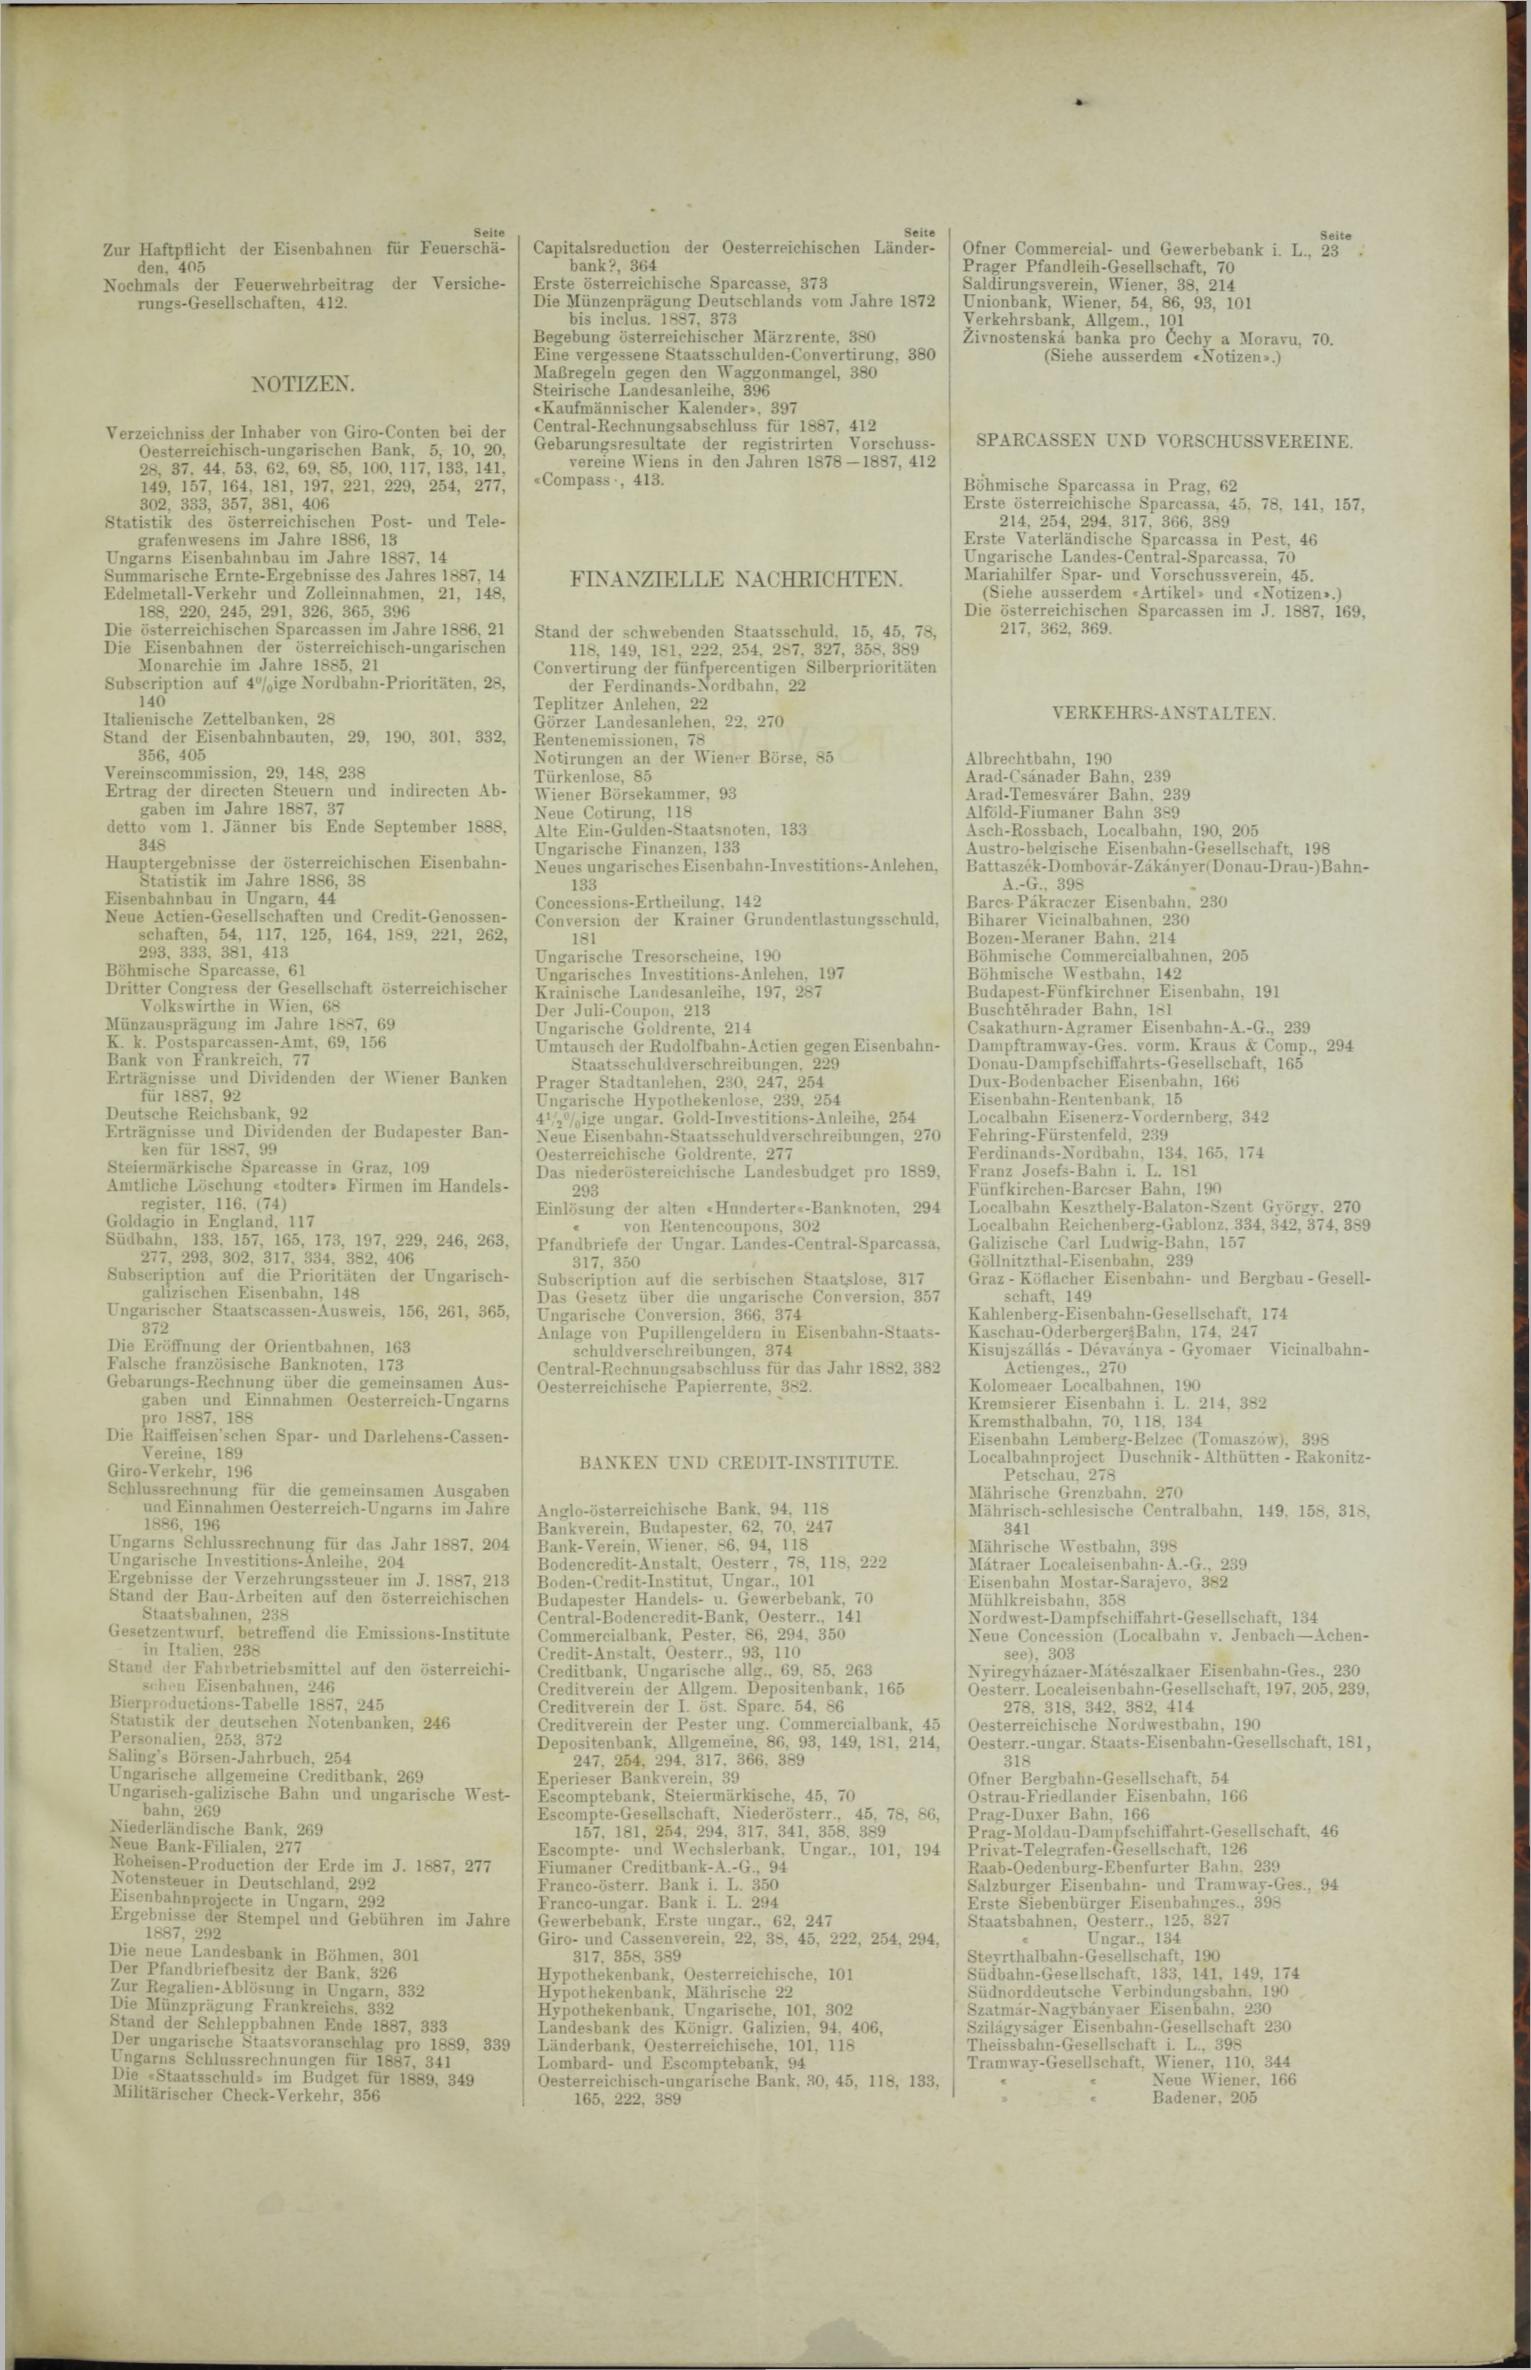 Der Tresor 06.12.1888 - Seite 11